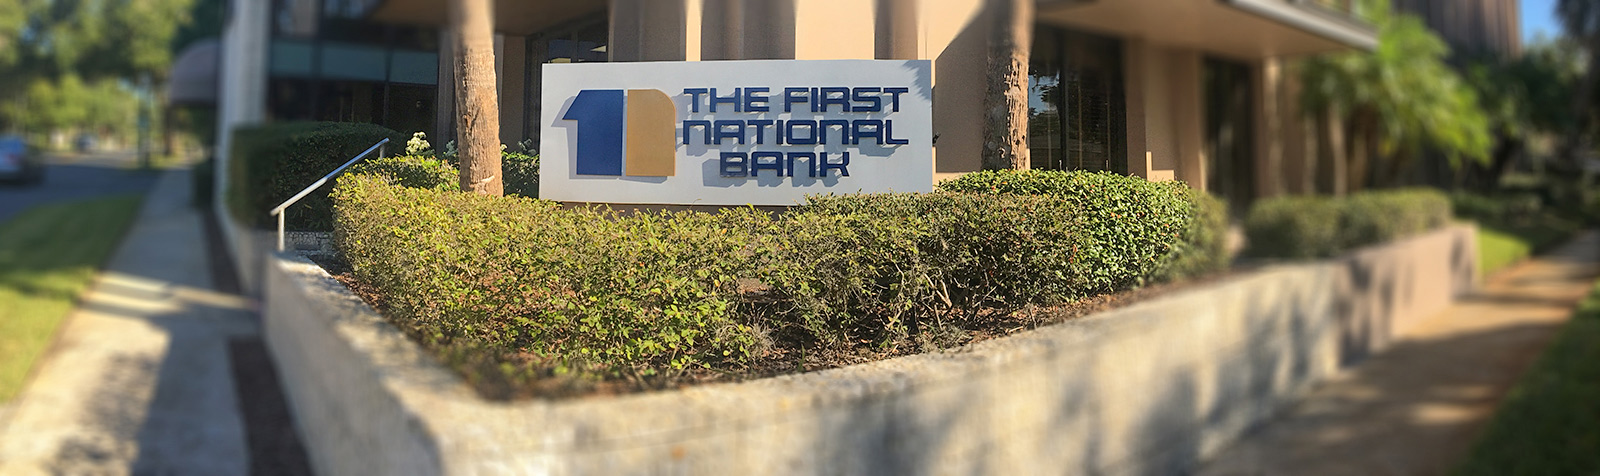 exterior sign at the main bank branch